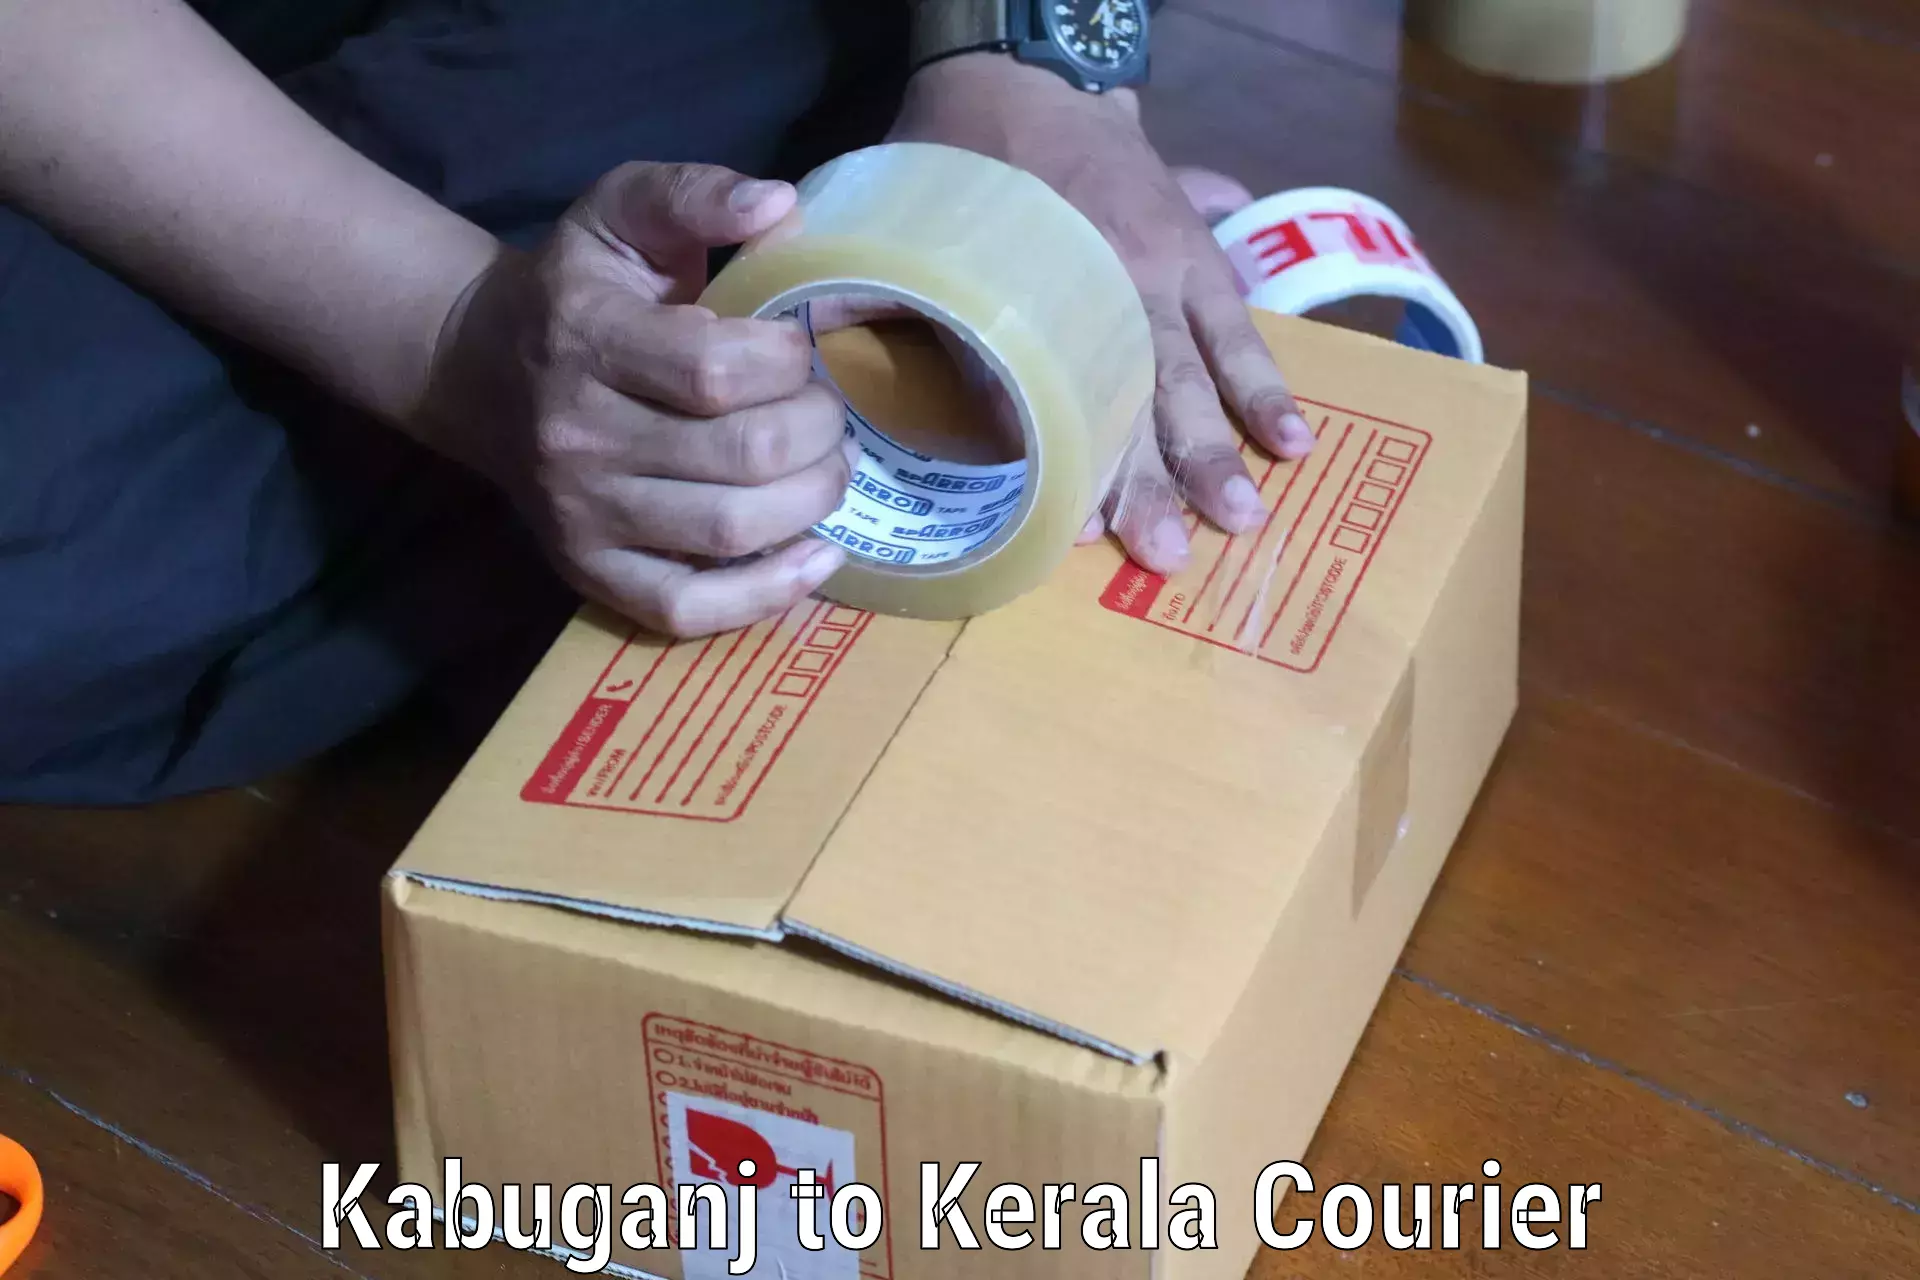 Efficient parcel delivery Kabuganj to Koyilandy